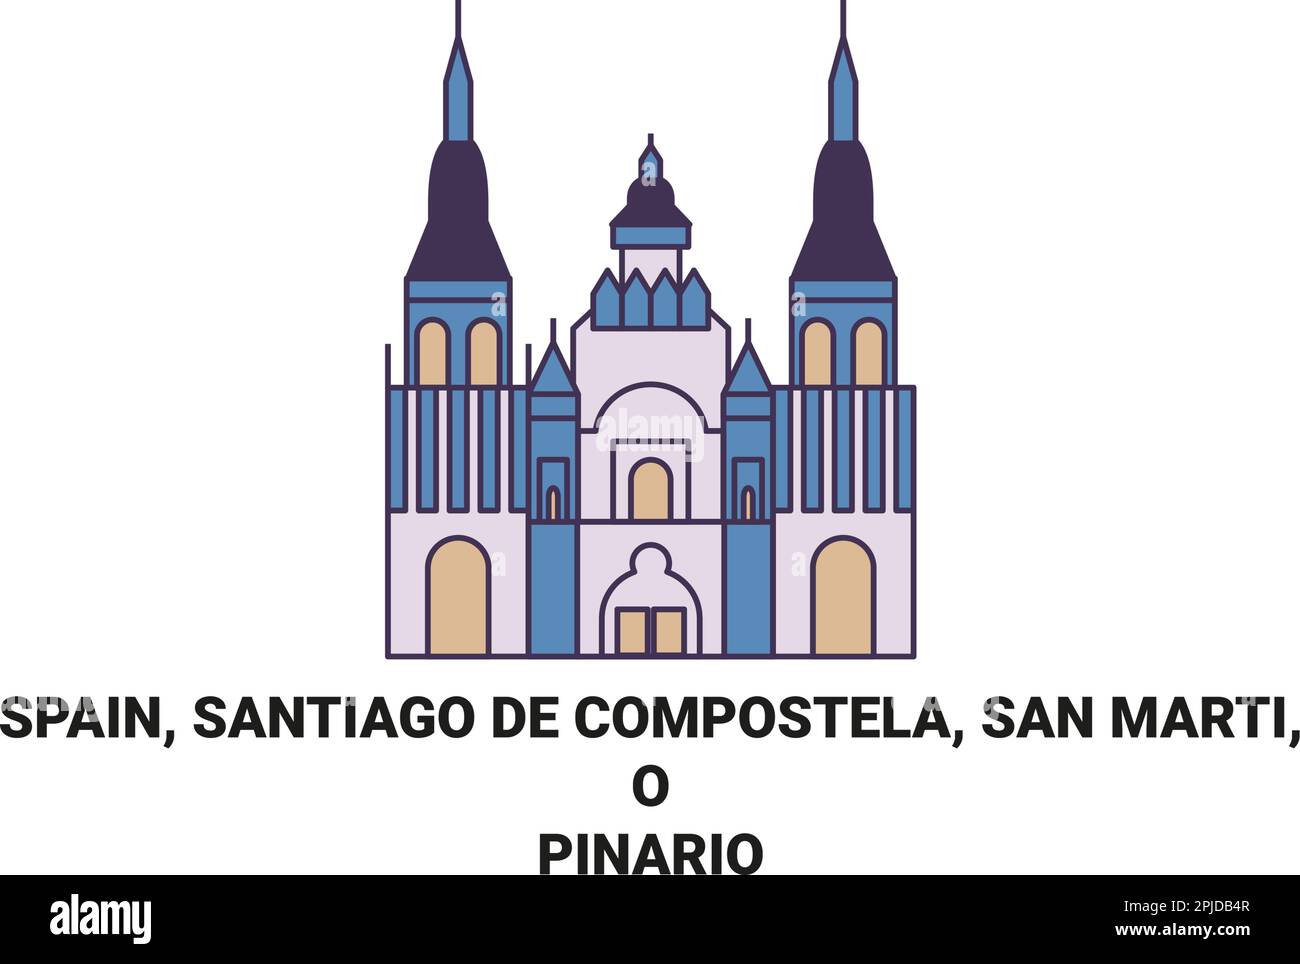 Spain, Santiago De Compostela, San Marti, O Pinario travel landmark vector illustration Stock Vector